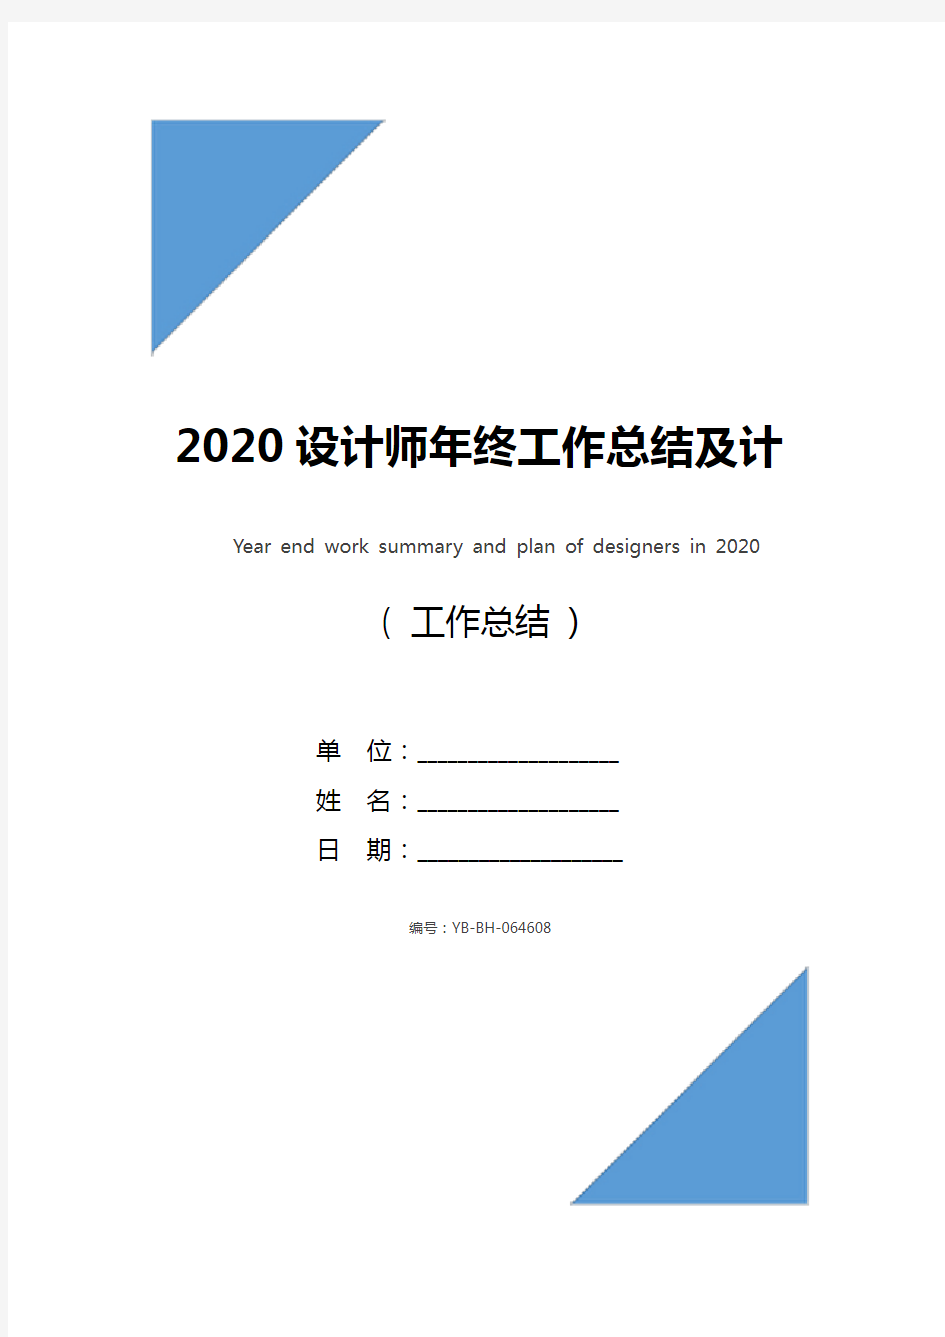 2020设计师年终工作总结及计划